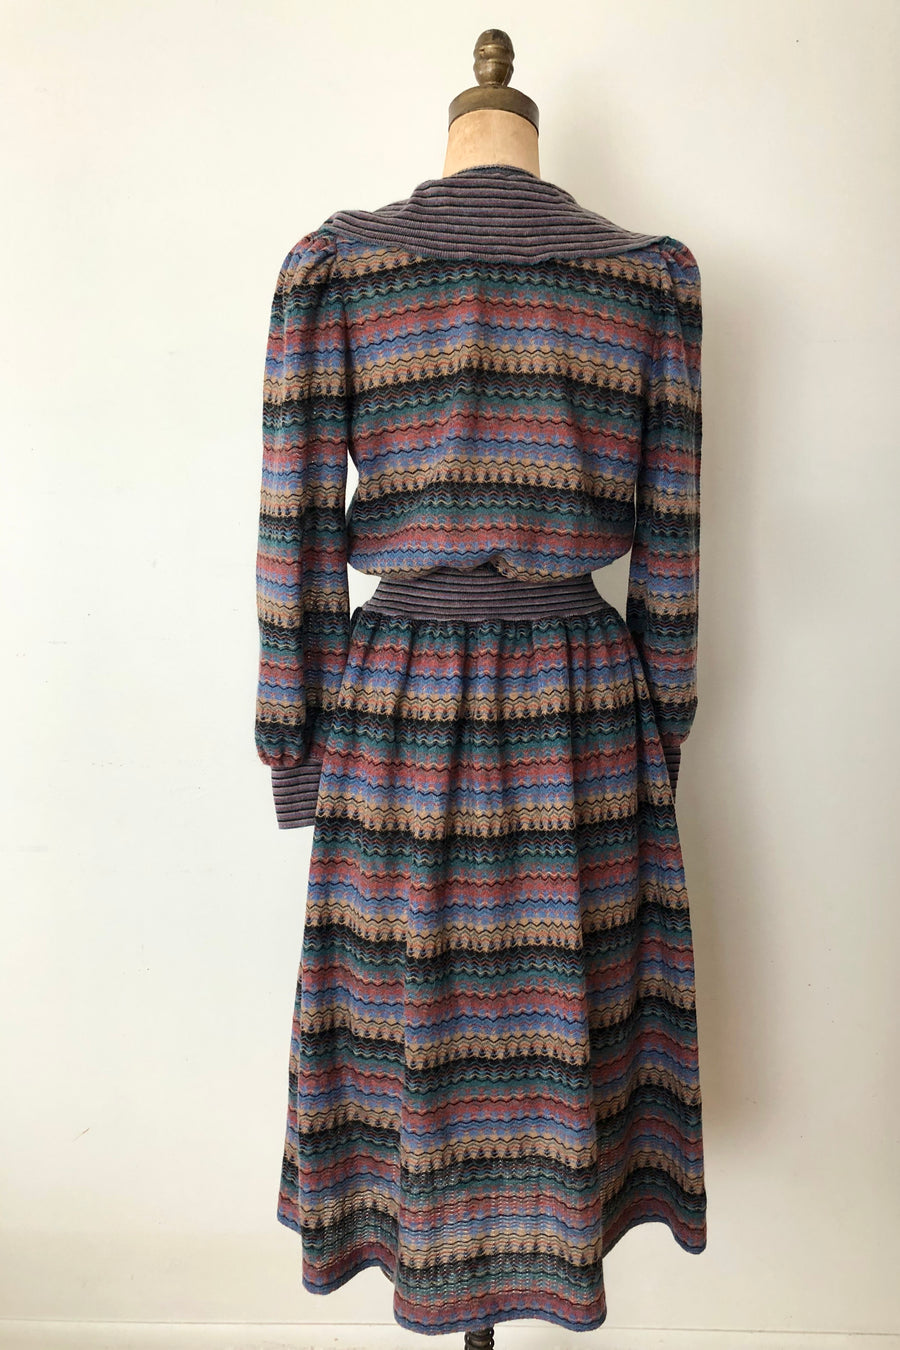 70's 80's Striped Knit Dress - Size M